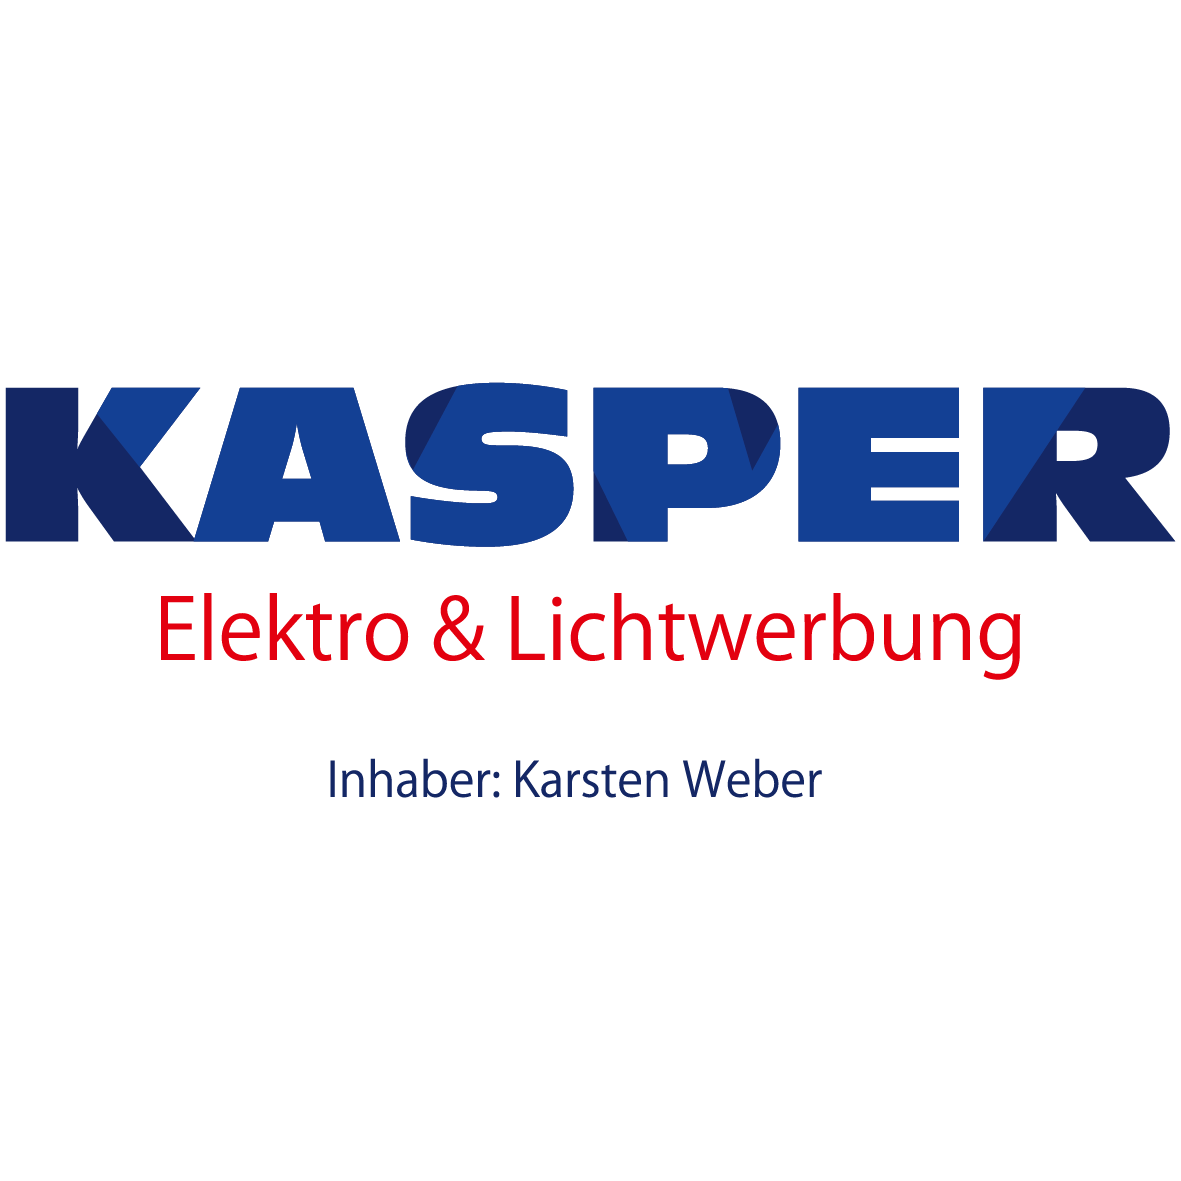 Kasper Elektro & Lichtwerbung Inh. Karsten Weber in Schallstadt - Logo